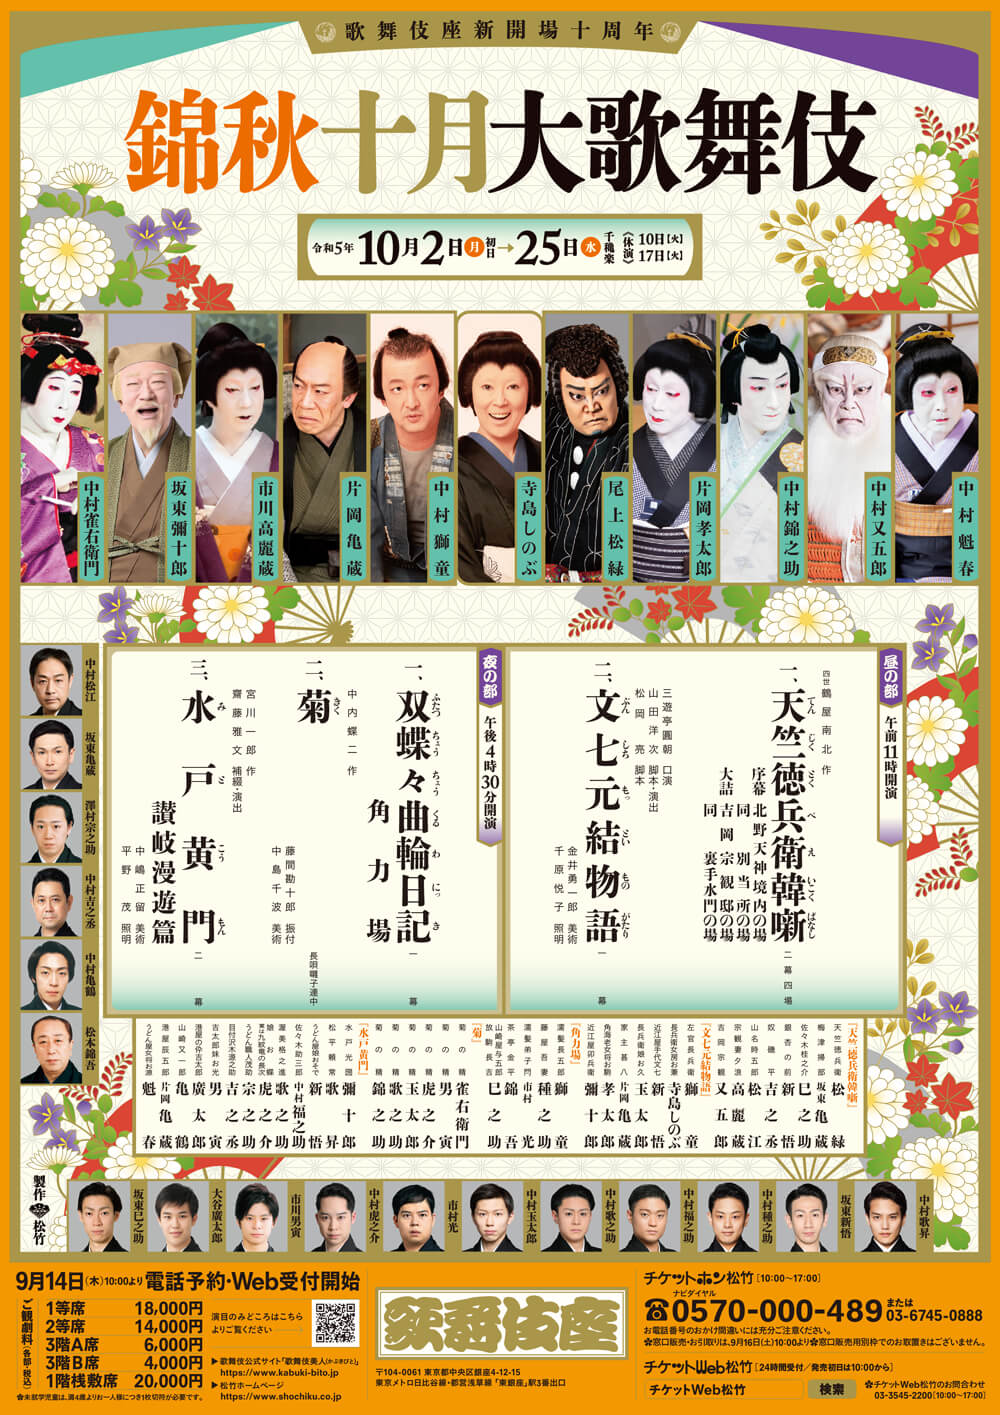 October Program at the kabukiza